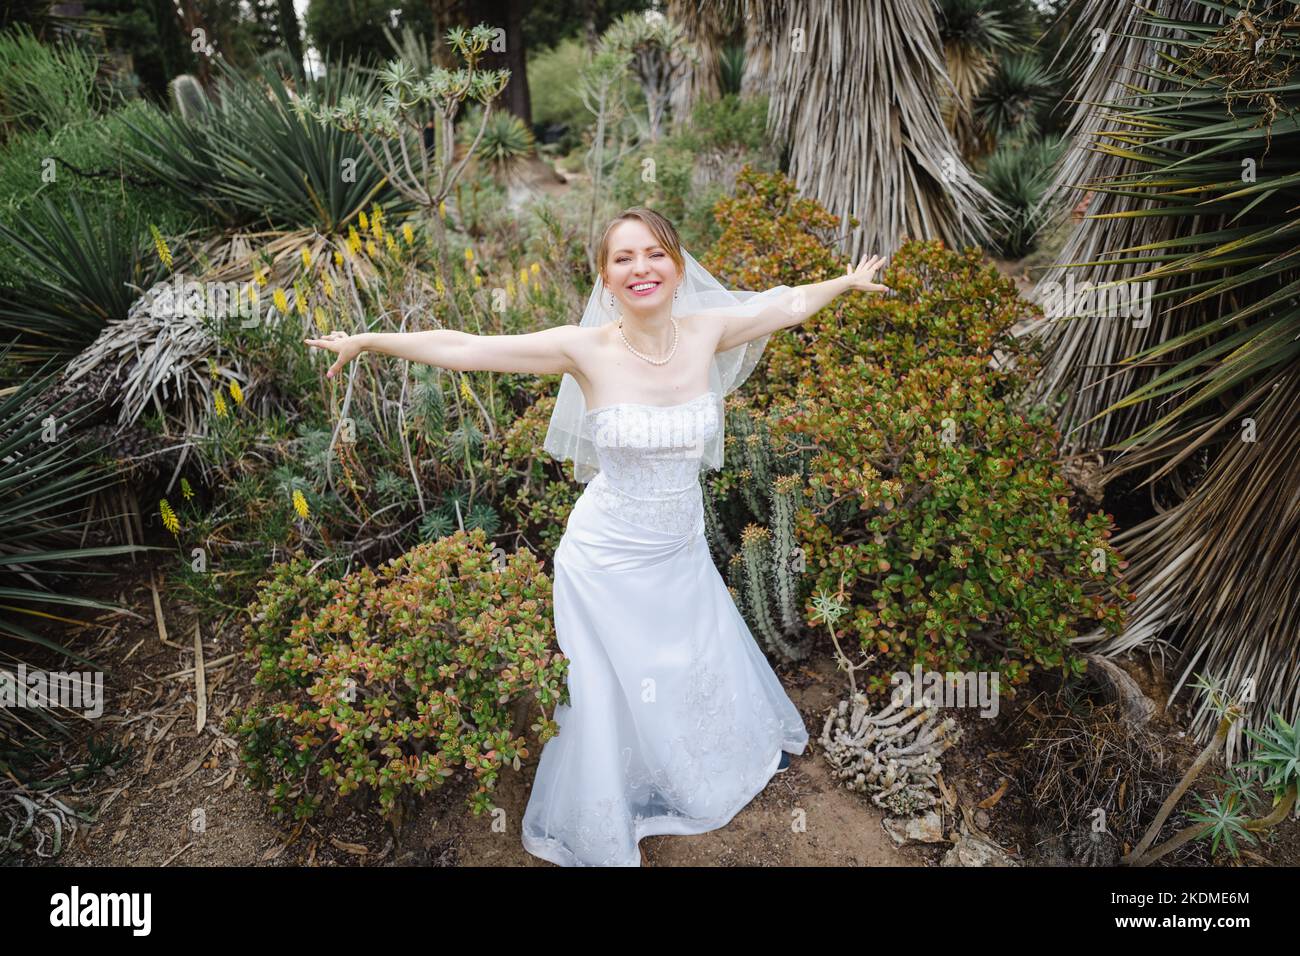 Mariée faisant des ailes d'avion avec des armes dans un jardin de Cactus Banque D'Images